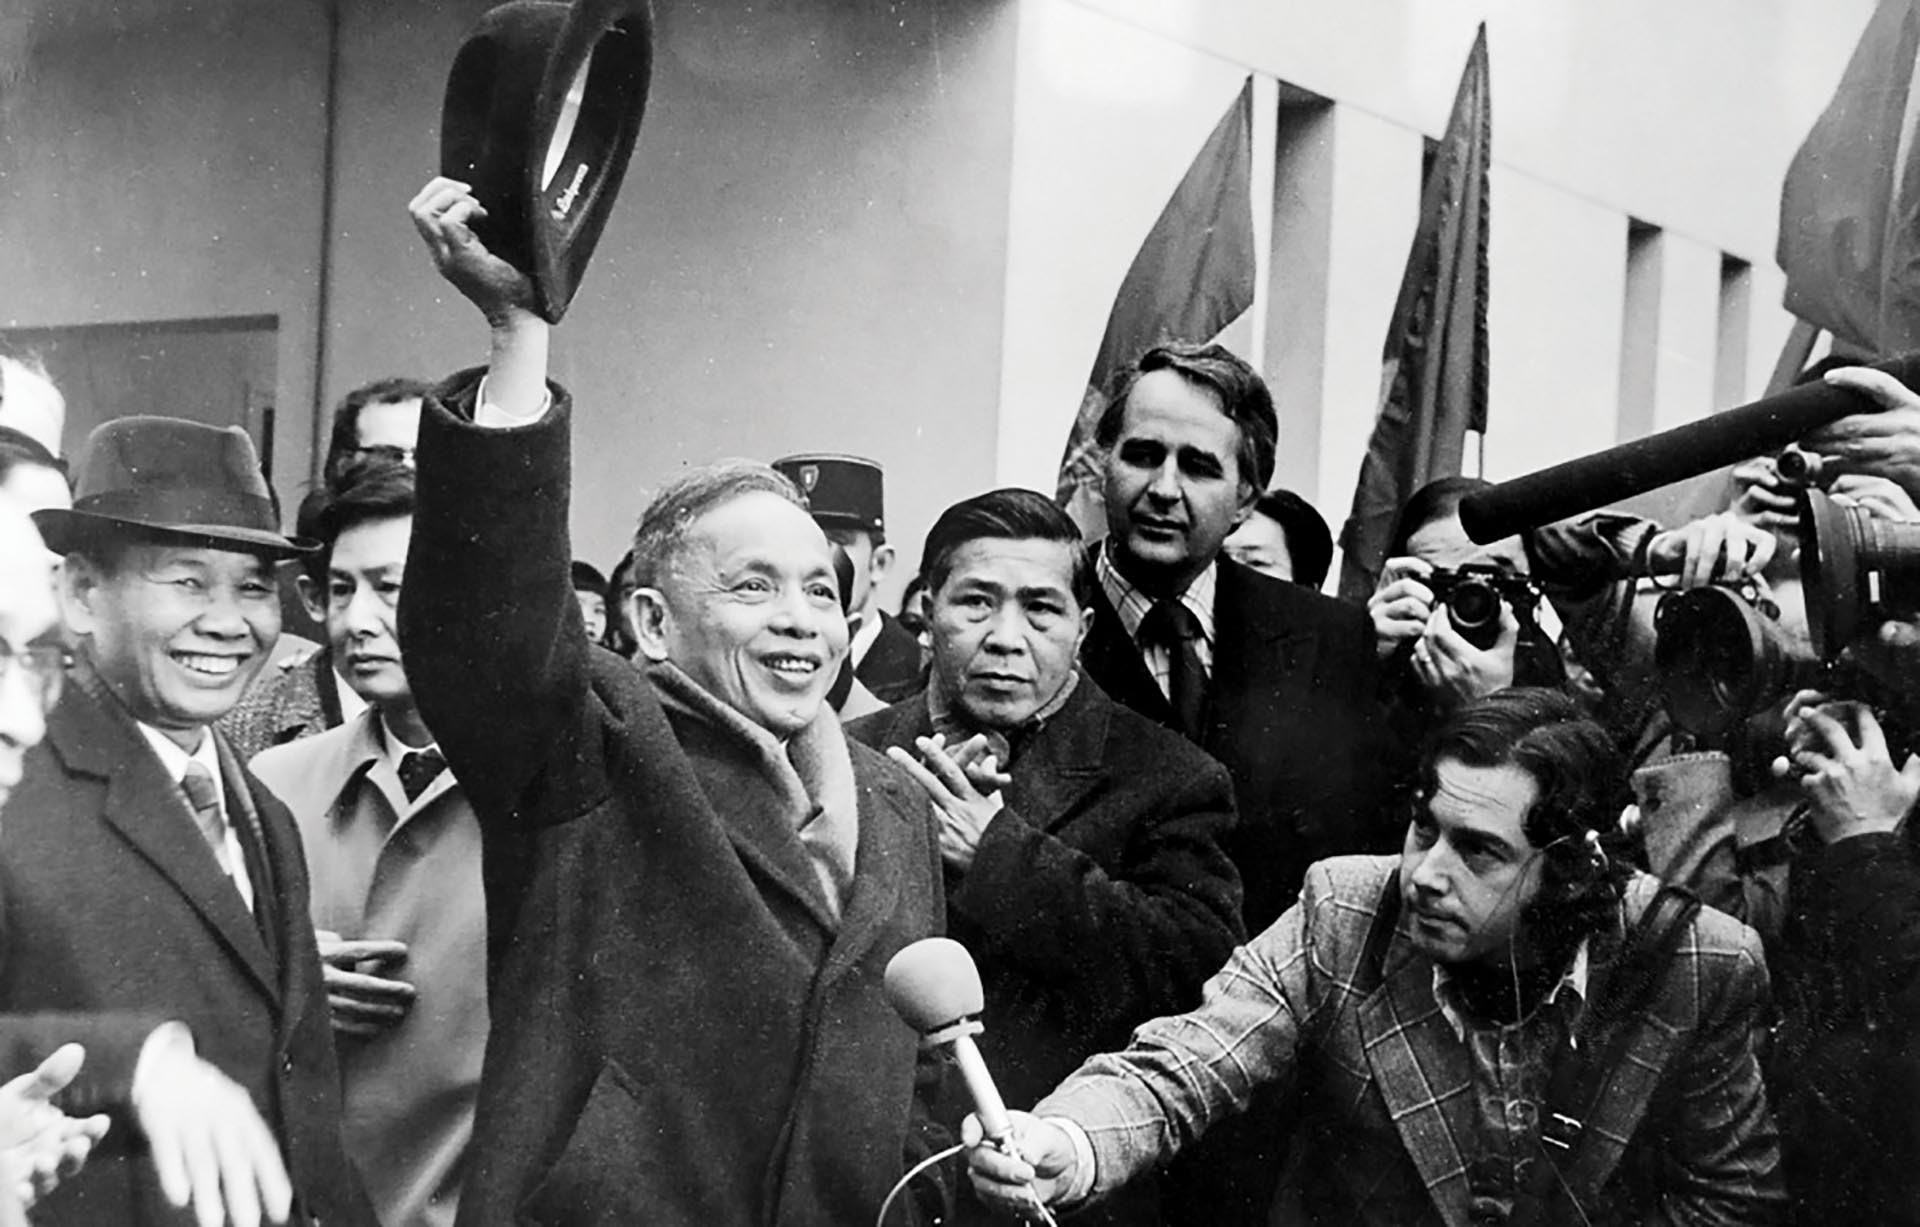 Phó Thủ tướng, Bộ trưởng Ngoại giao Nguyễn Duy Trinh trả lời báo chí bên lề Hội nghị Paris, năm 1973.